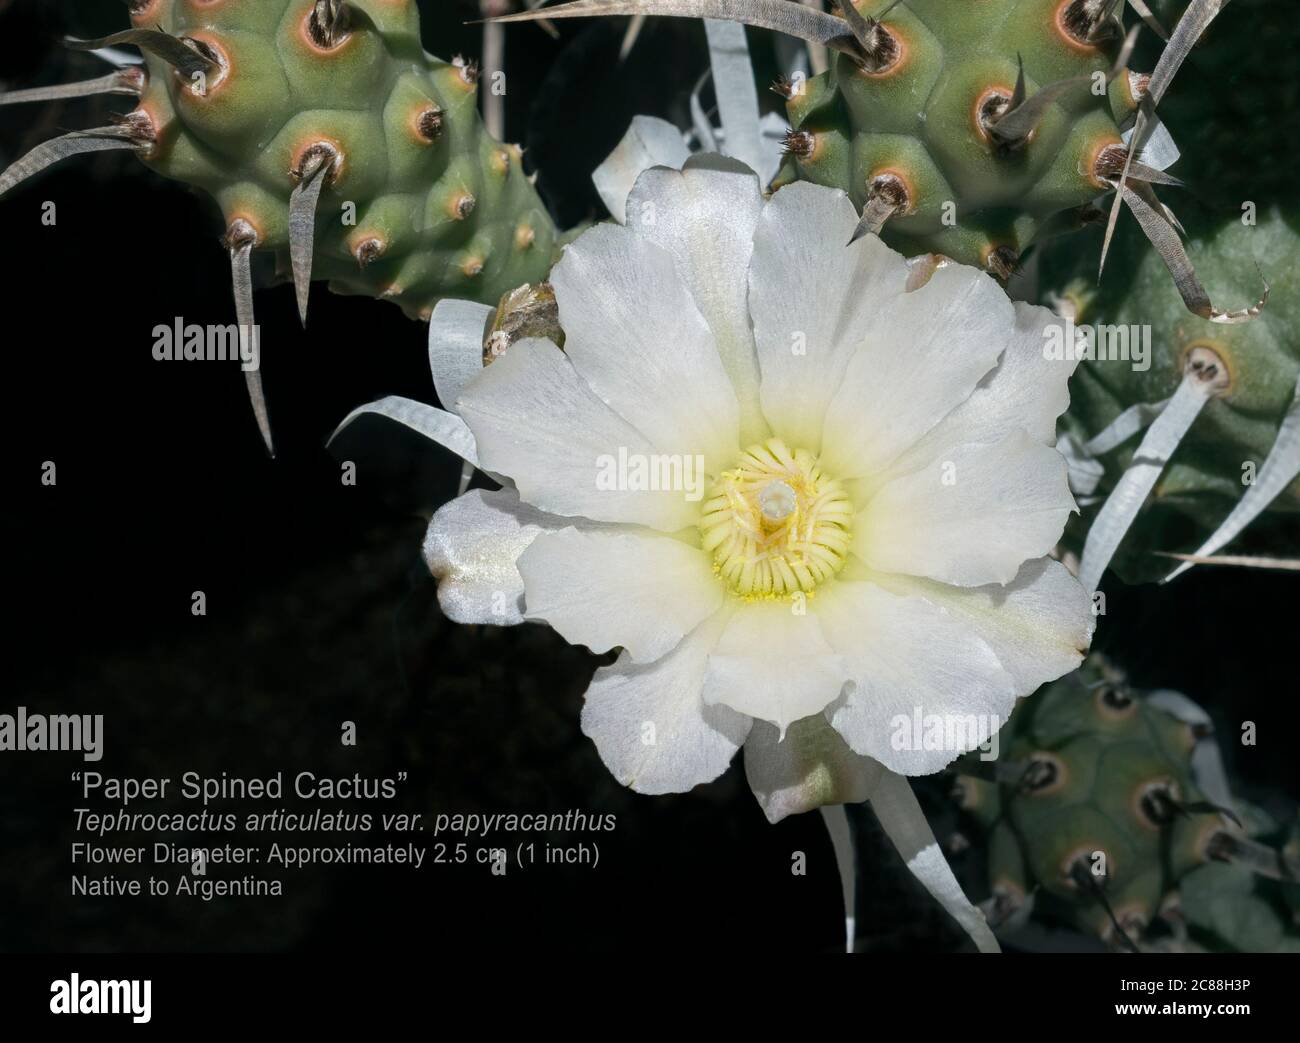 Macro etiquetada de una flor de cactus de espina de papel de Tephrocactus blanco cerquero rodeada de ramas y espinas de papado sobre fondo negro Foto de stock